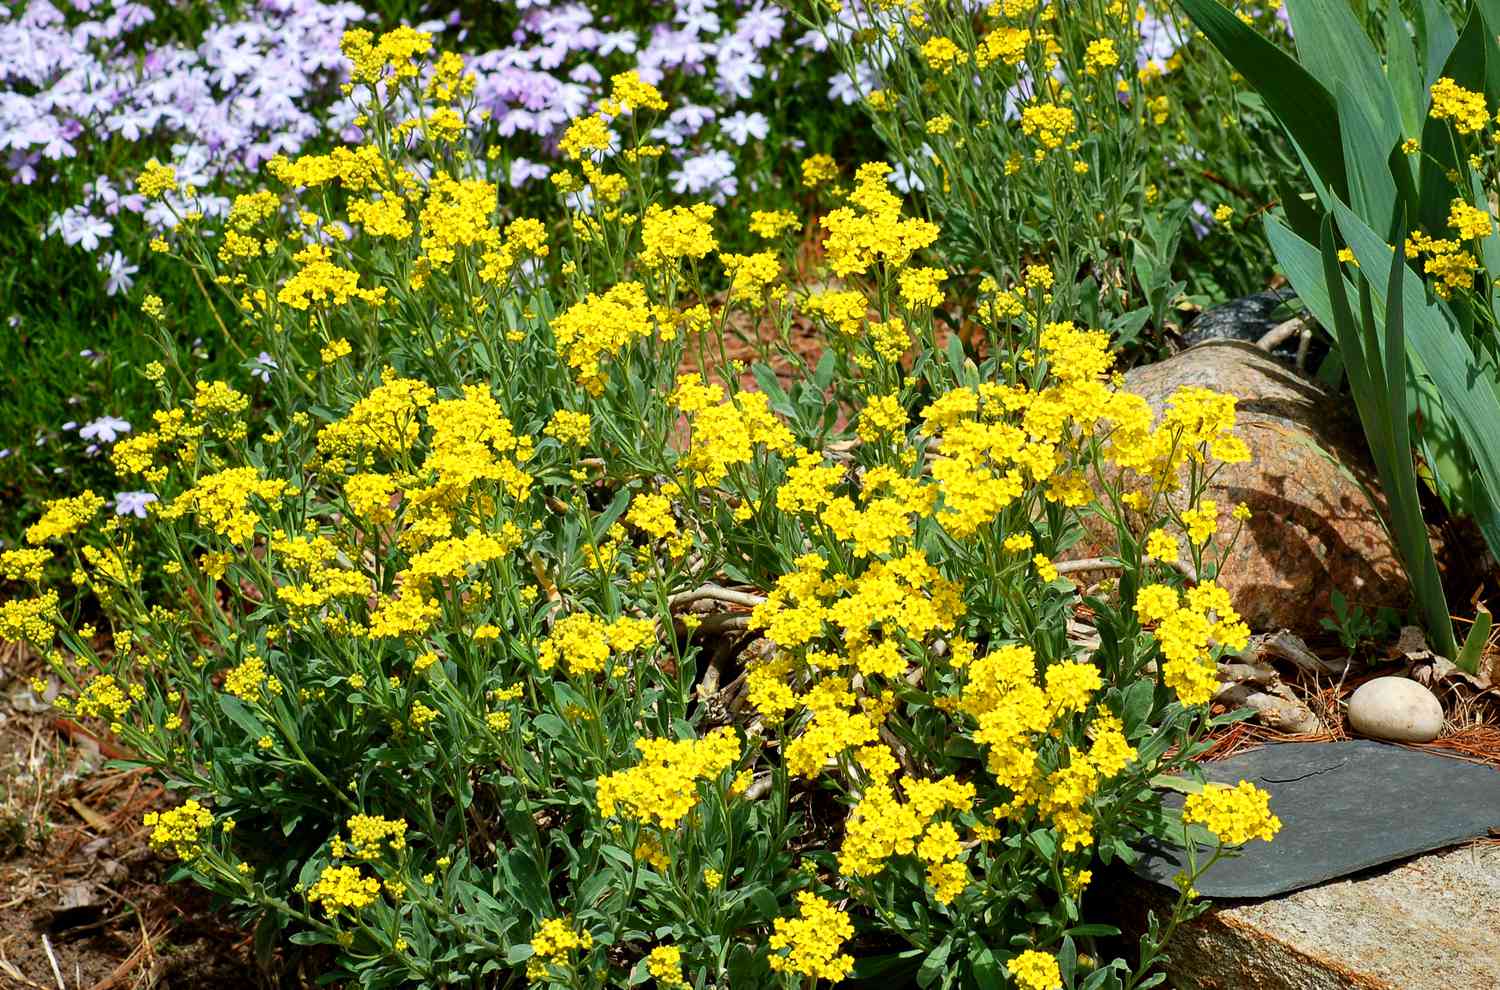 Flores amarillas de alyssum entre flores de phlox y rocas.